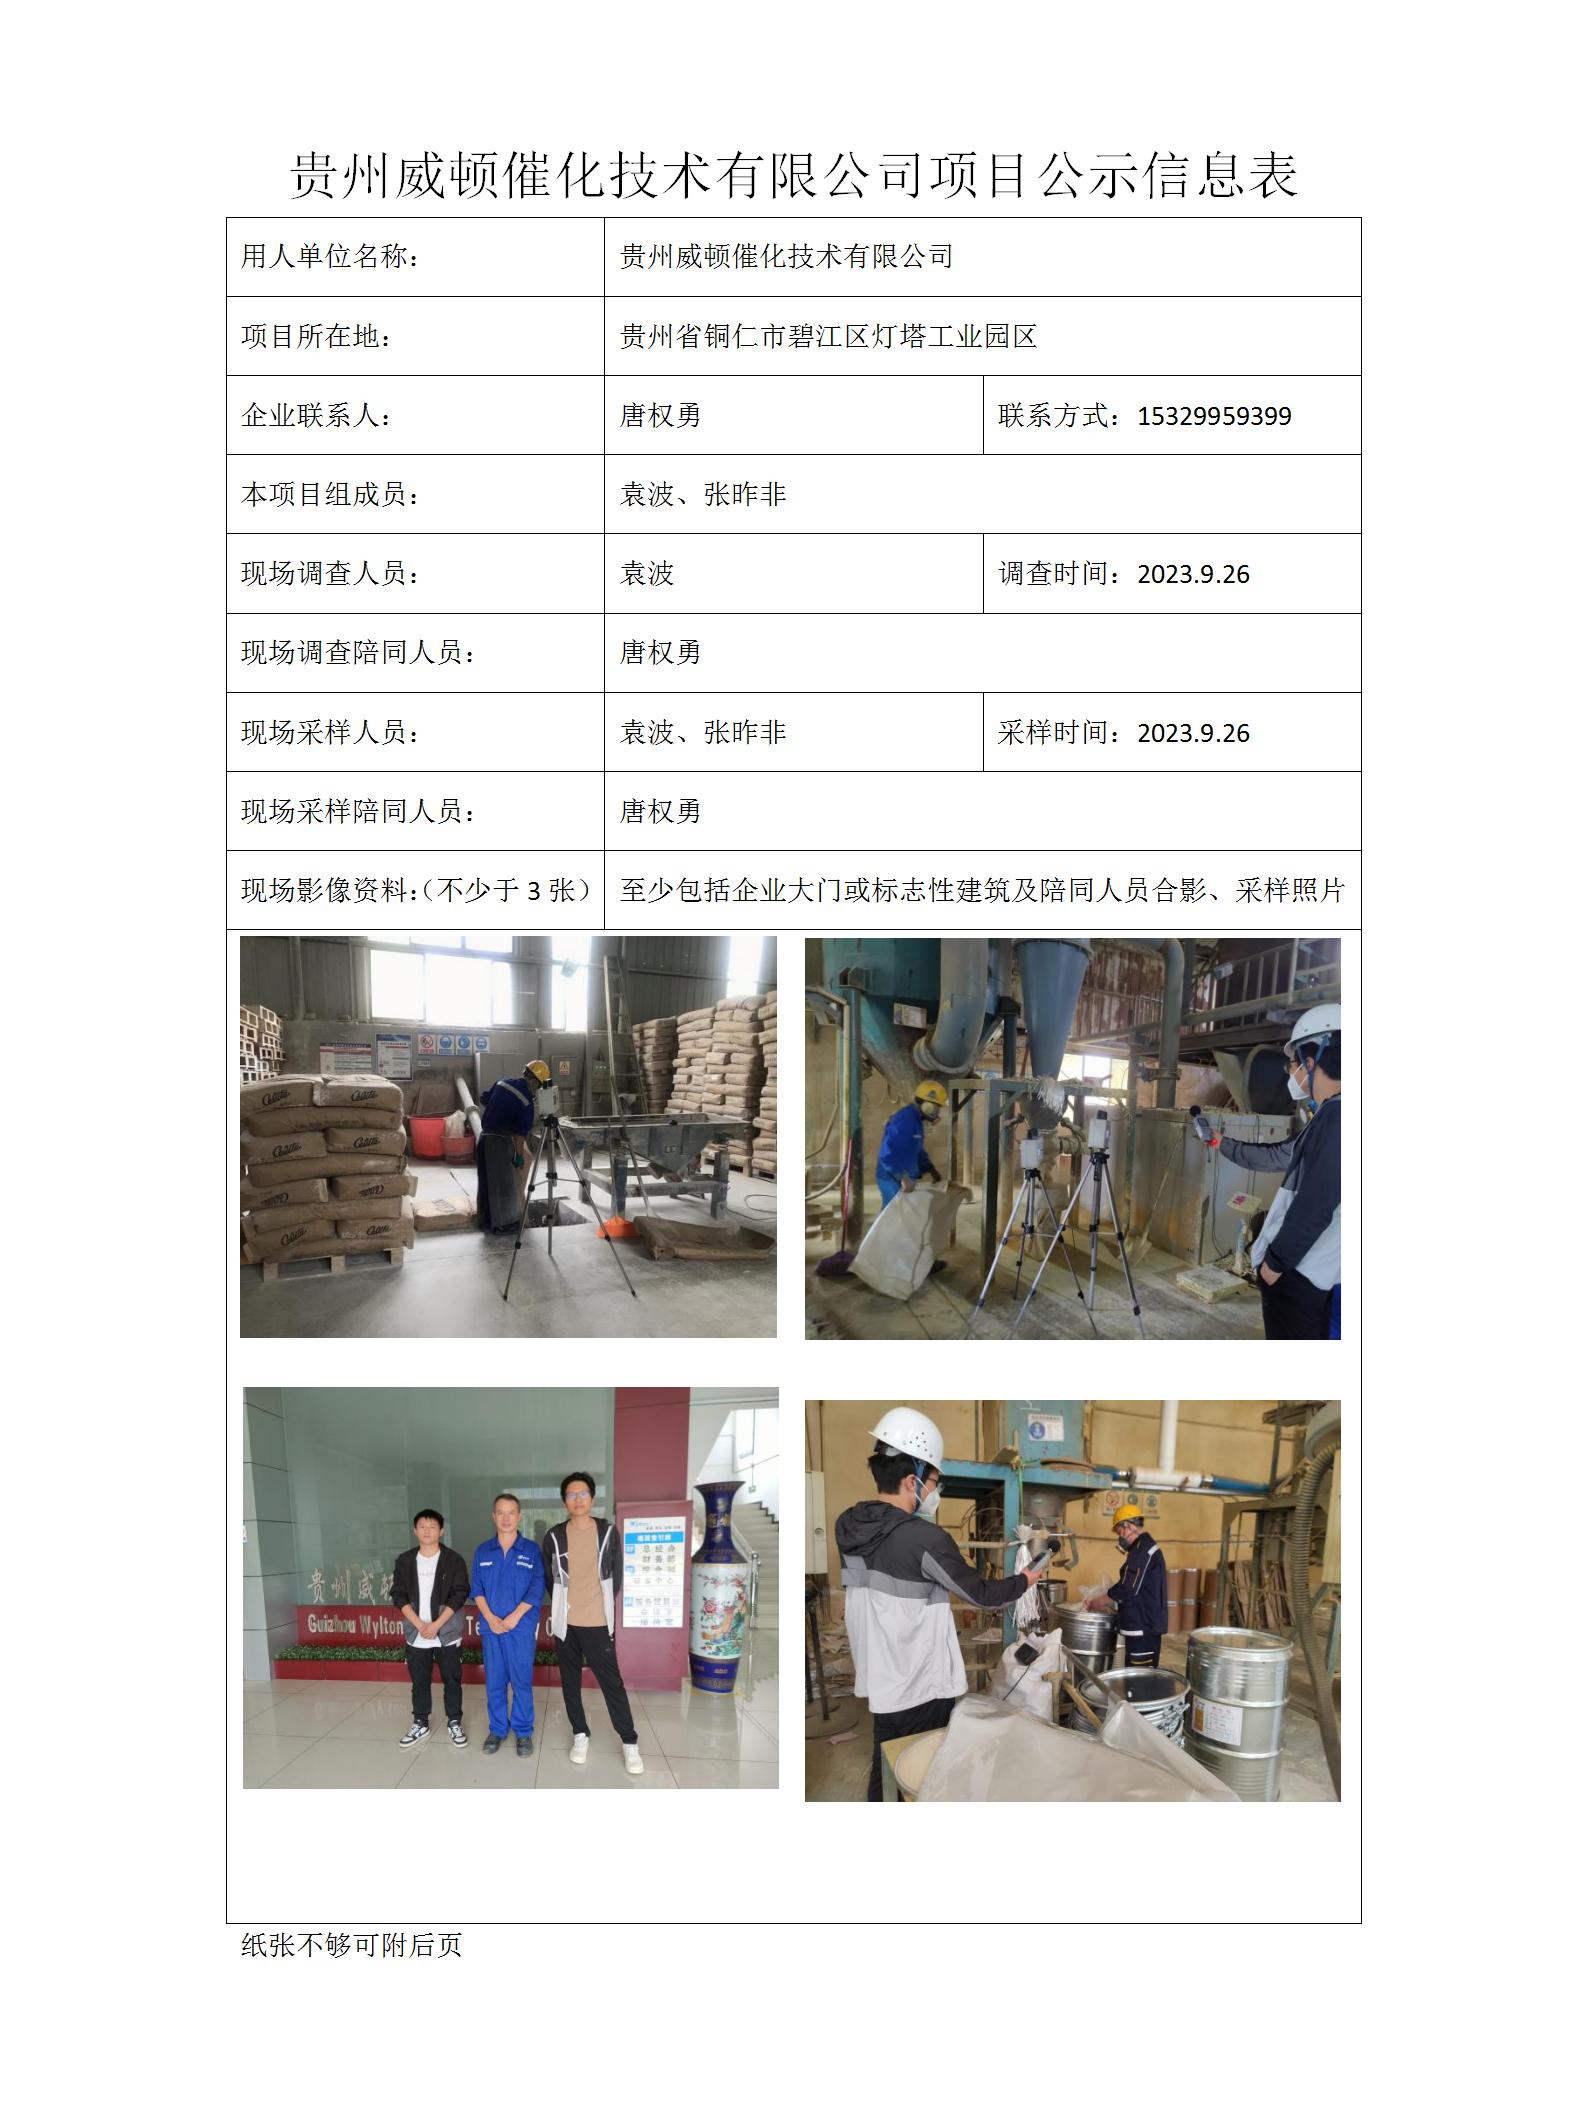 MD2023-0256（JC）贵州威顿催化技术有限公司项目公示信息表_01.jpg